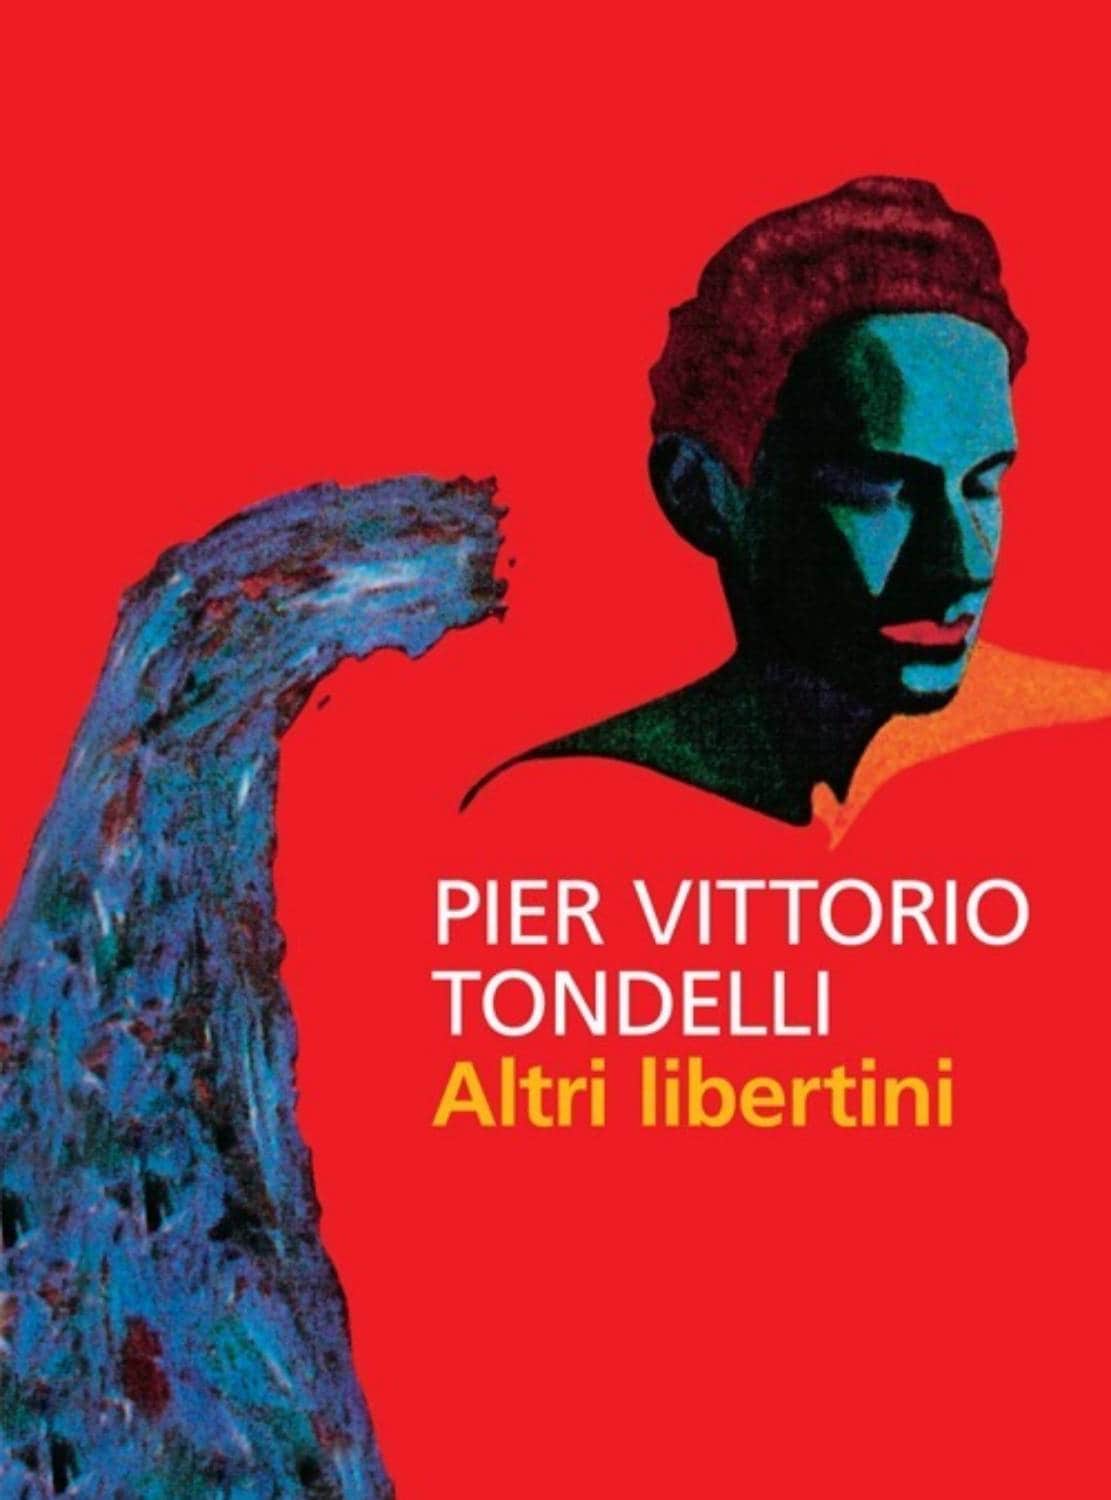 Altri libertini, Pier Vittorio Tondelli, 1980